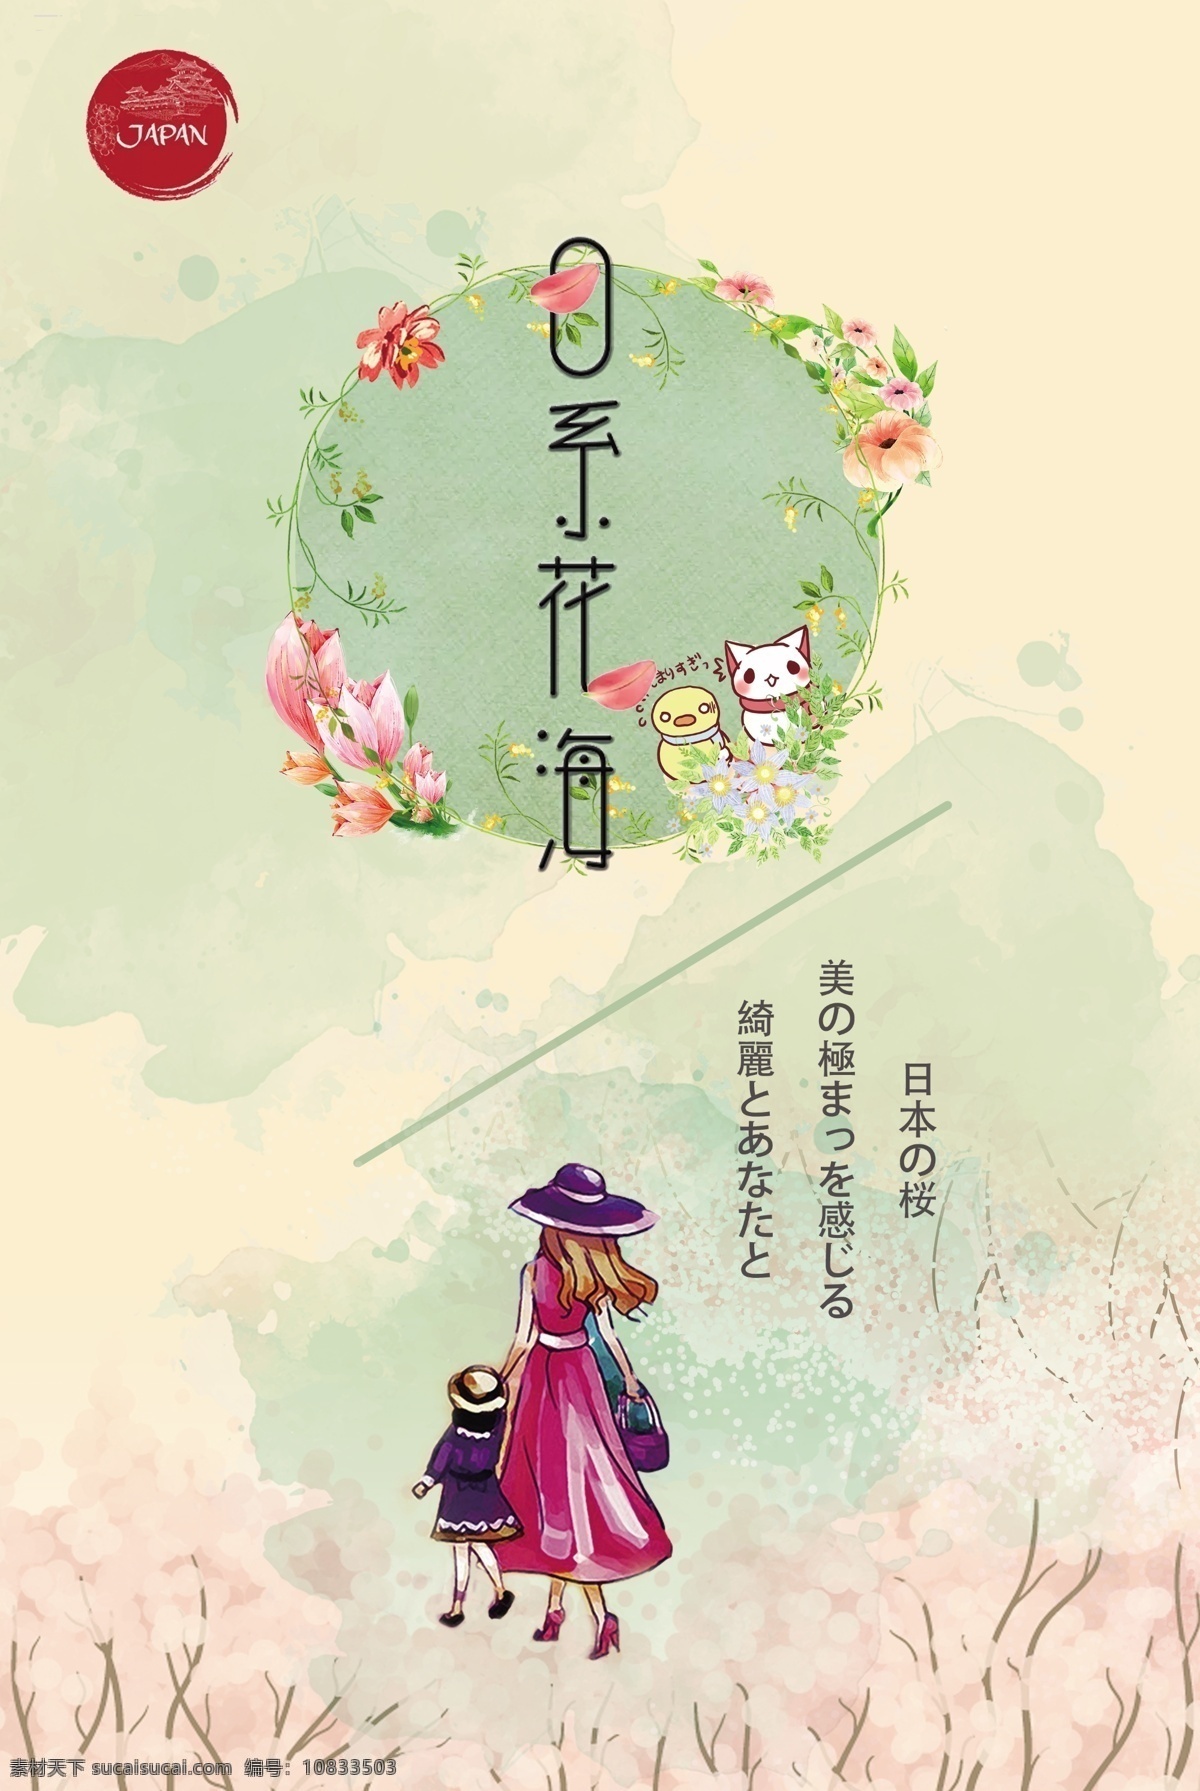 樱花节海报 日本樱花 樱花节 日系花海 旅游海报 花环花海